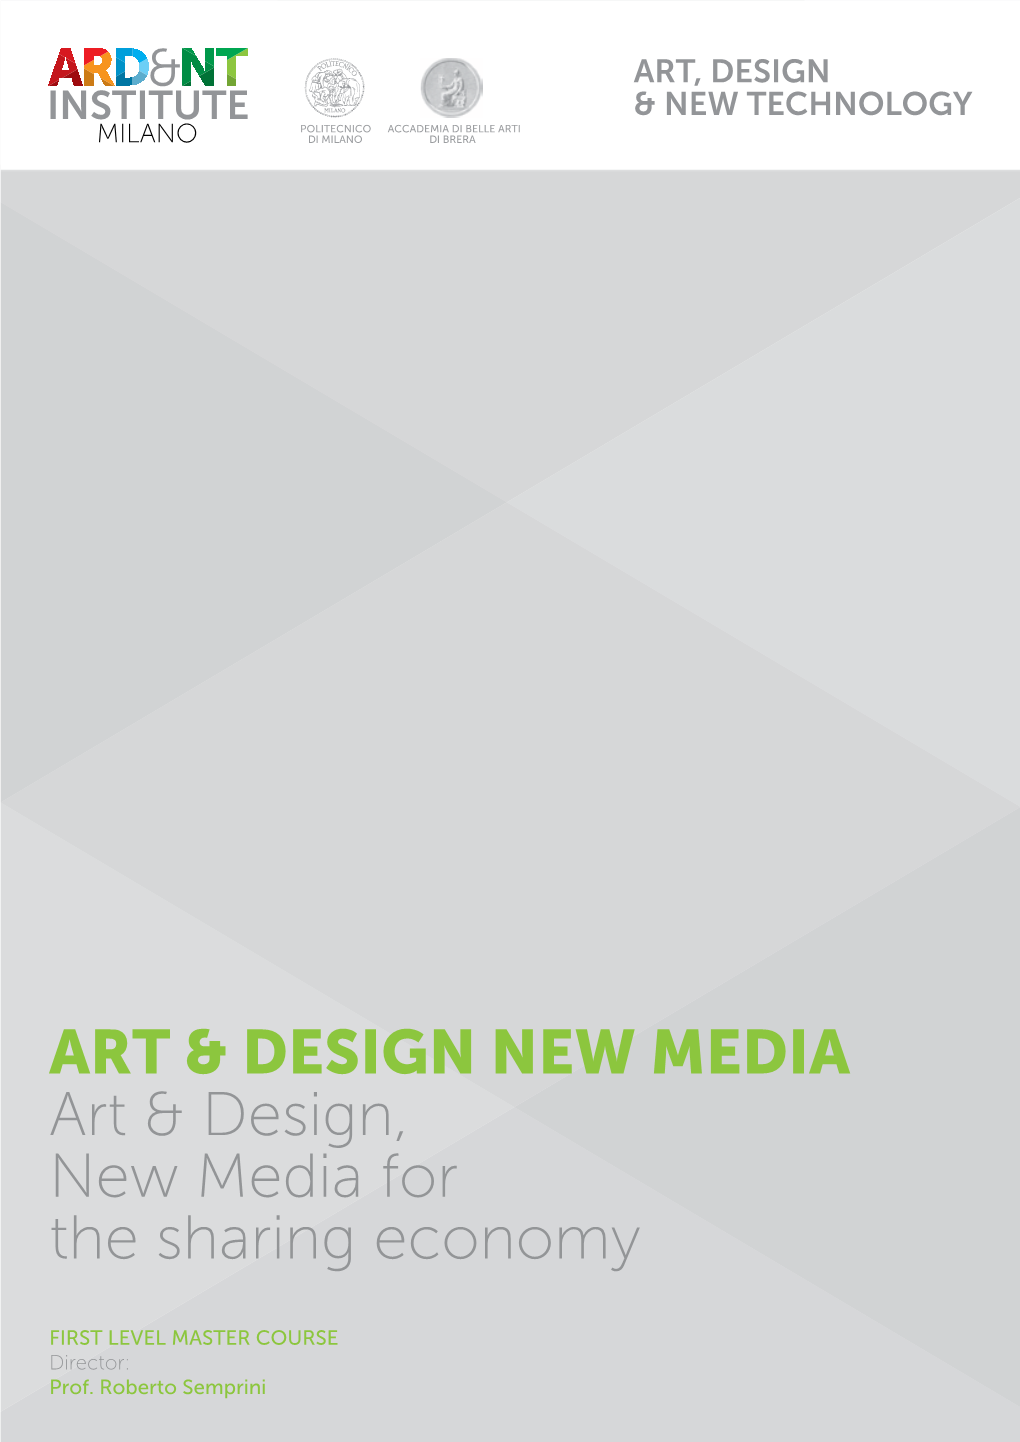 ART & DESIGN NEW MEDIA Art & Design, New